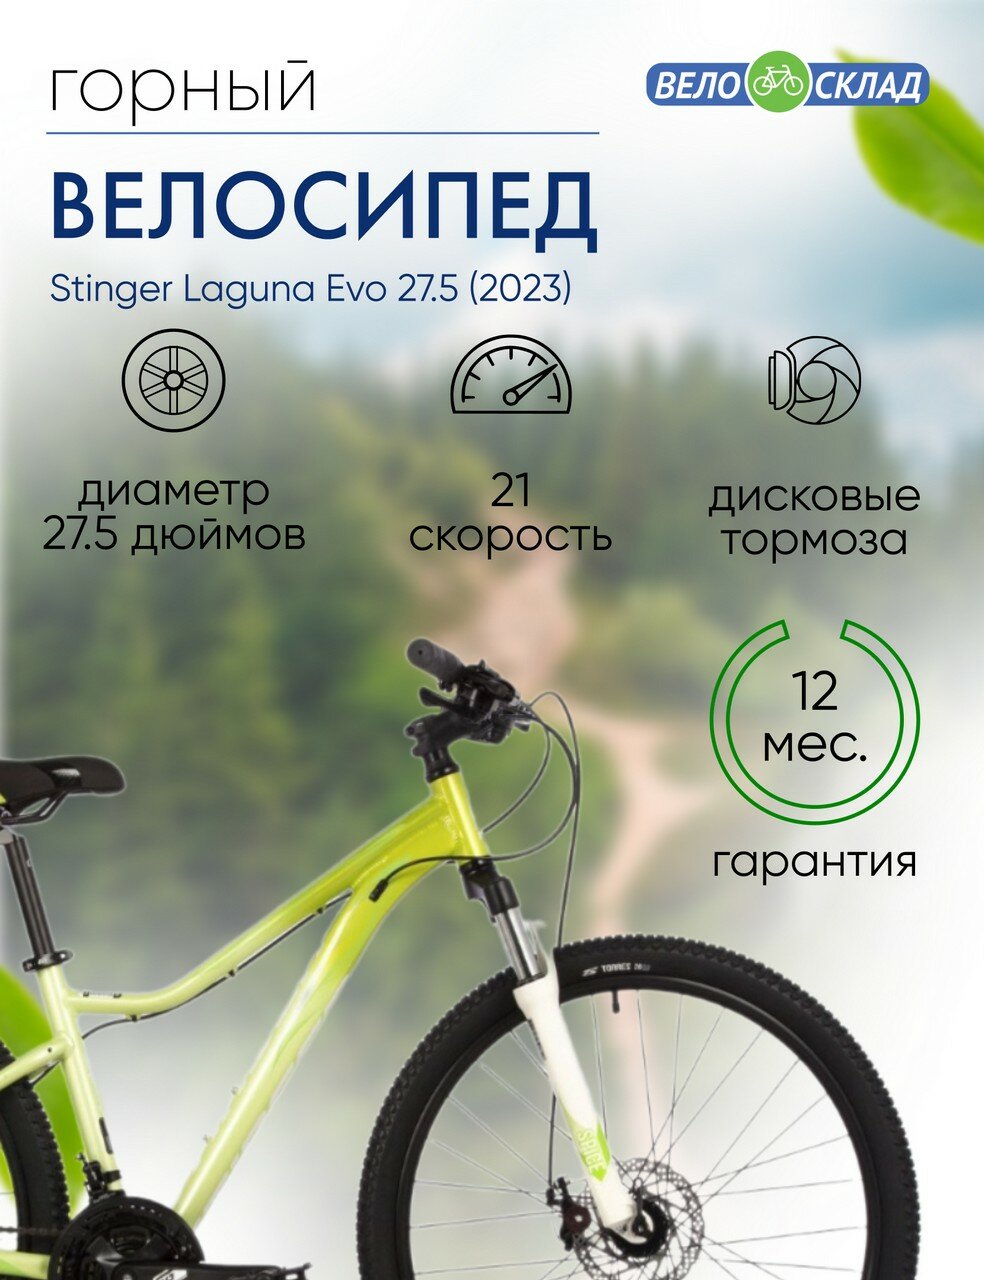 Женский велосипед Stinger Laguna Evo 27.5 год 2023 цвет Зеленый ростовка 19